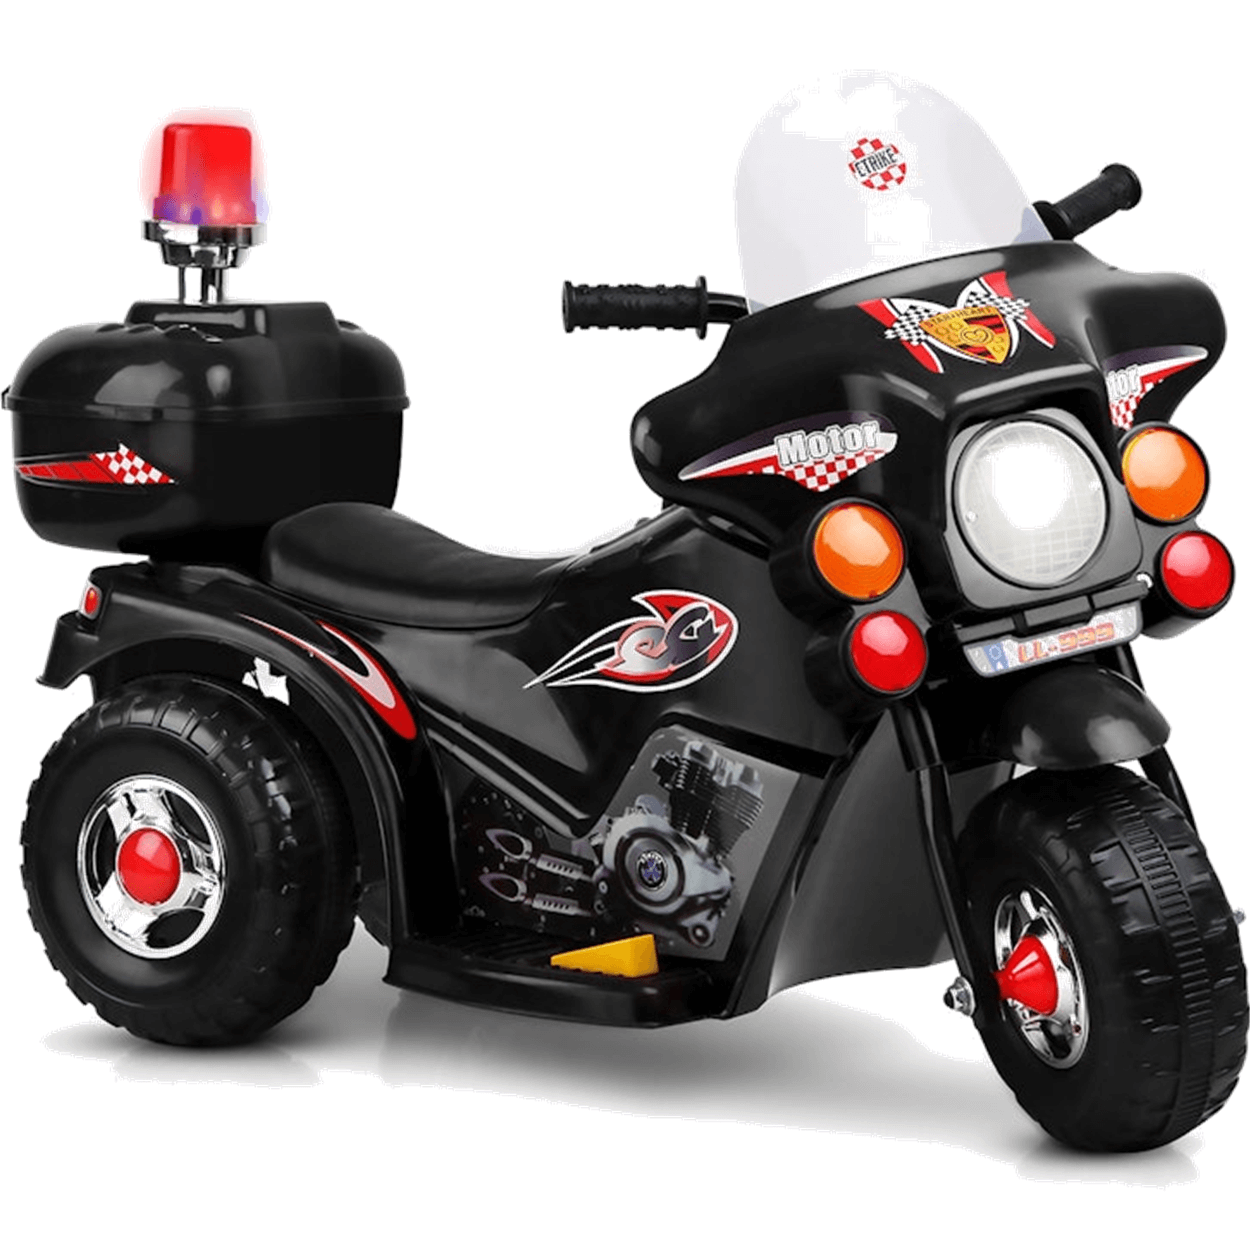 Moto Eletrica Infantil Policia Shiny Toys Motorcycle 6v Preta